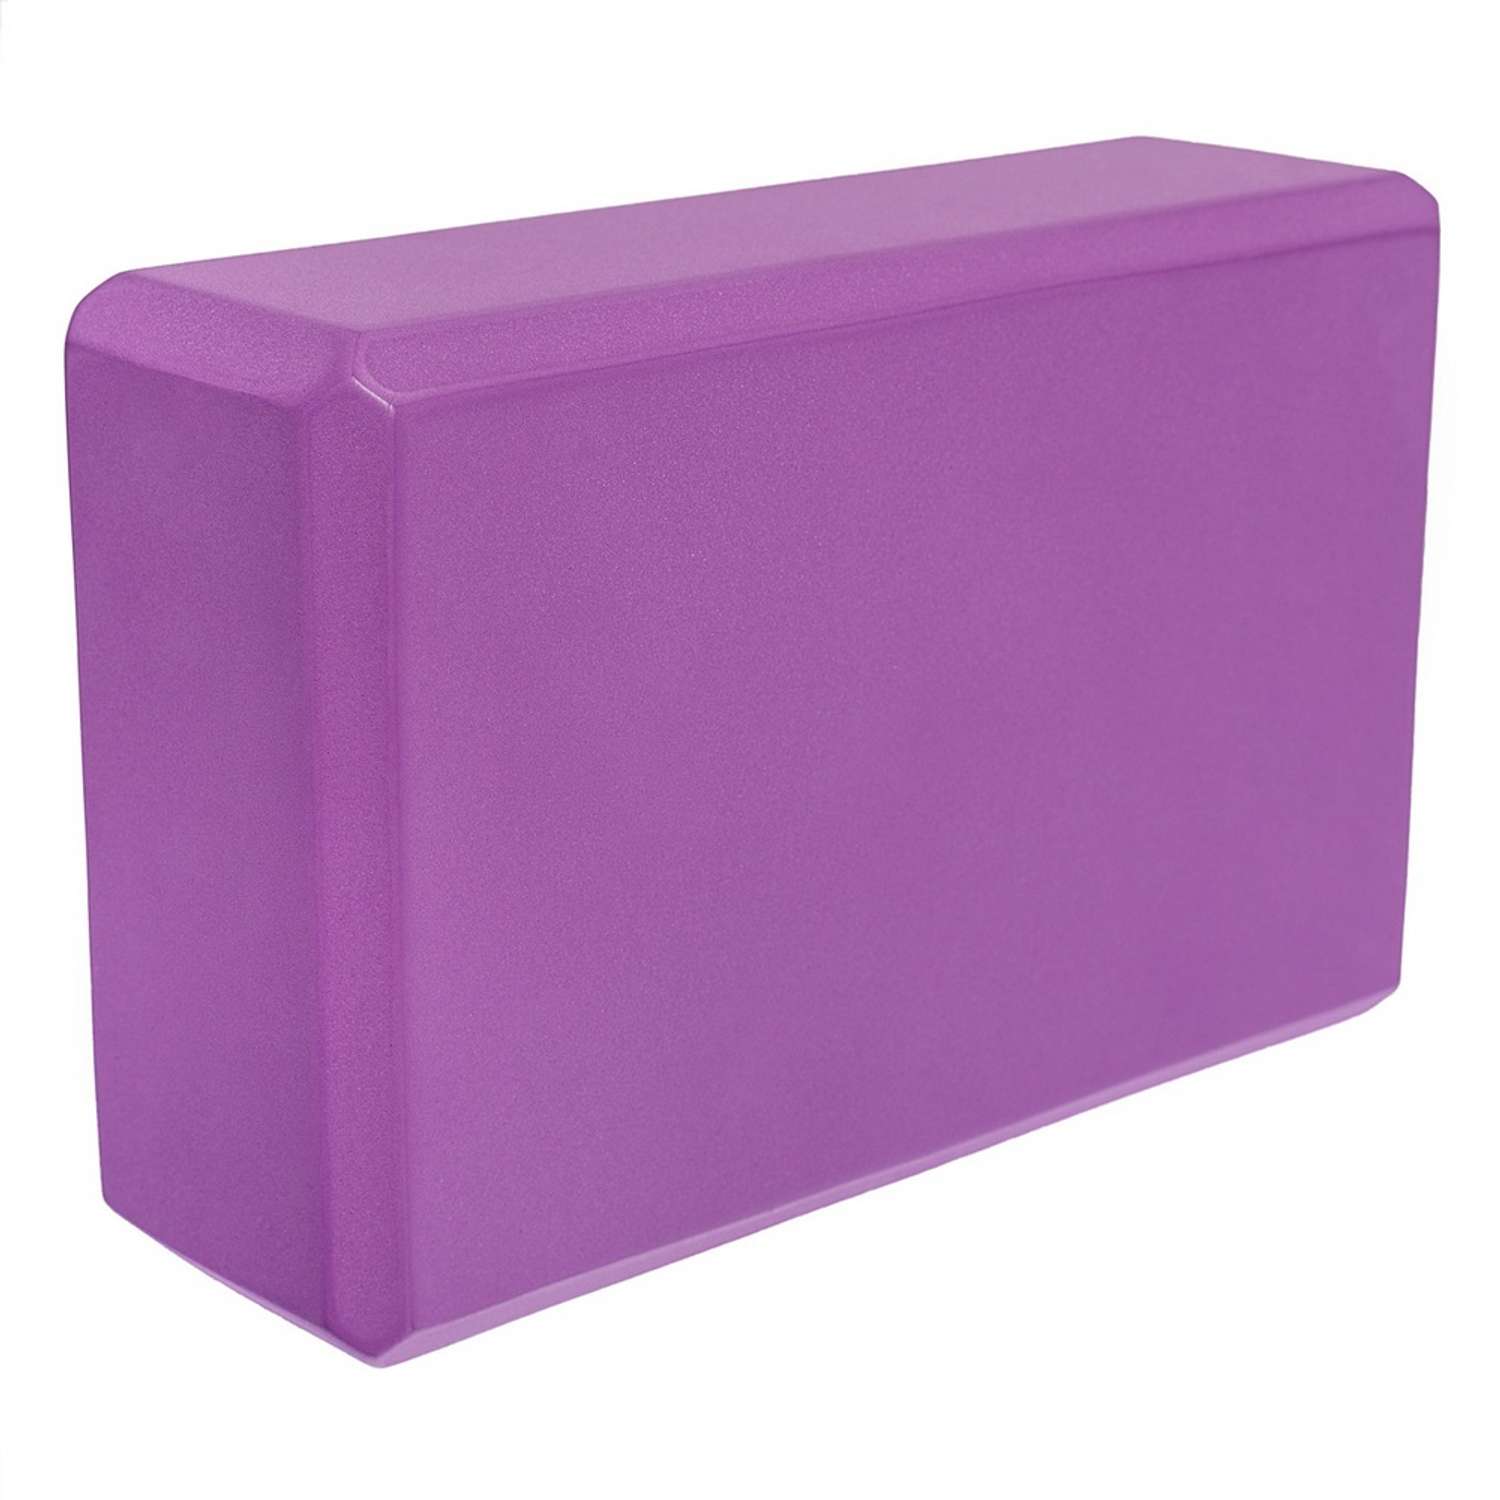 Блок для йоги STRONG BODY фиолетовый - фото 2